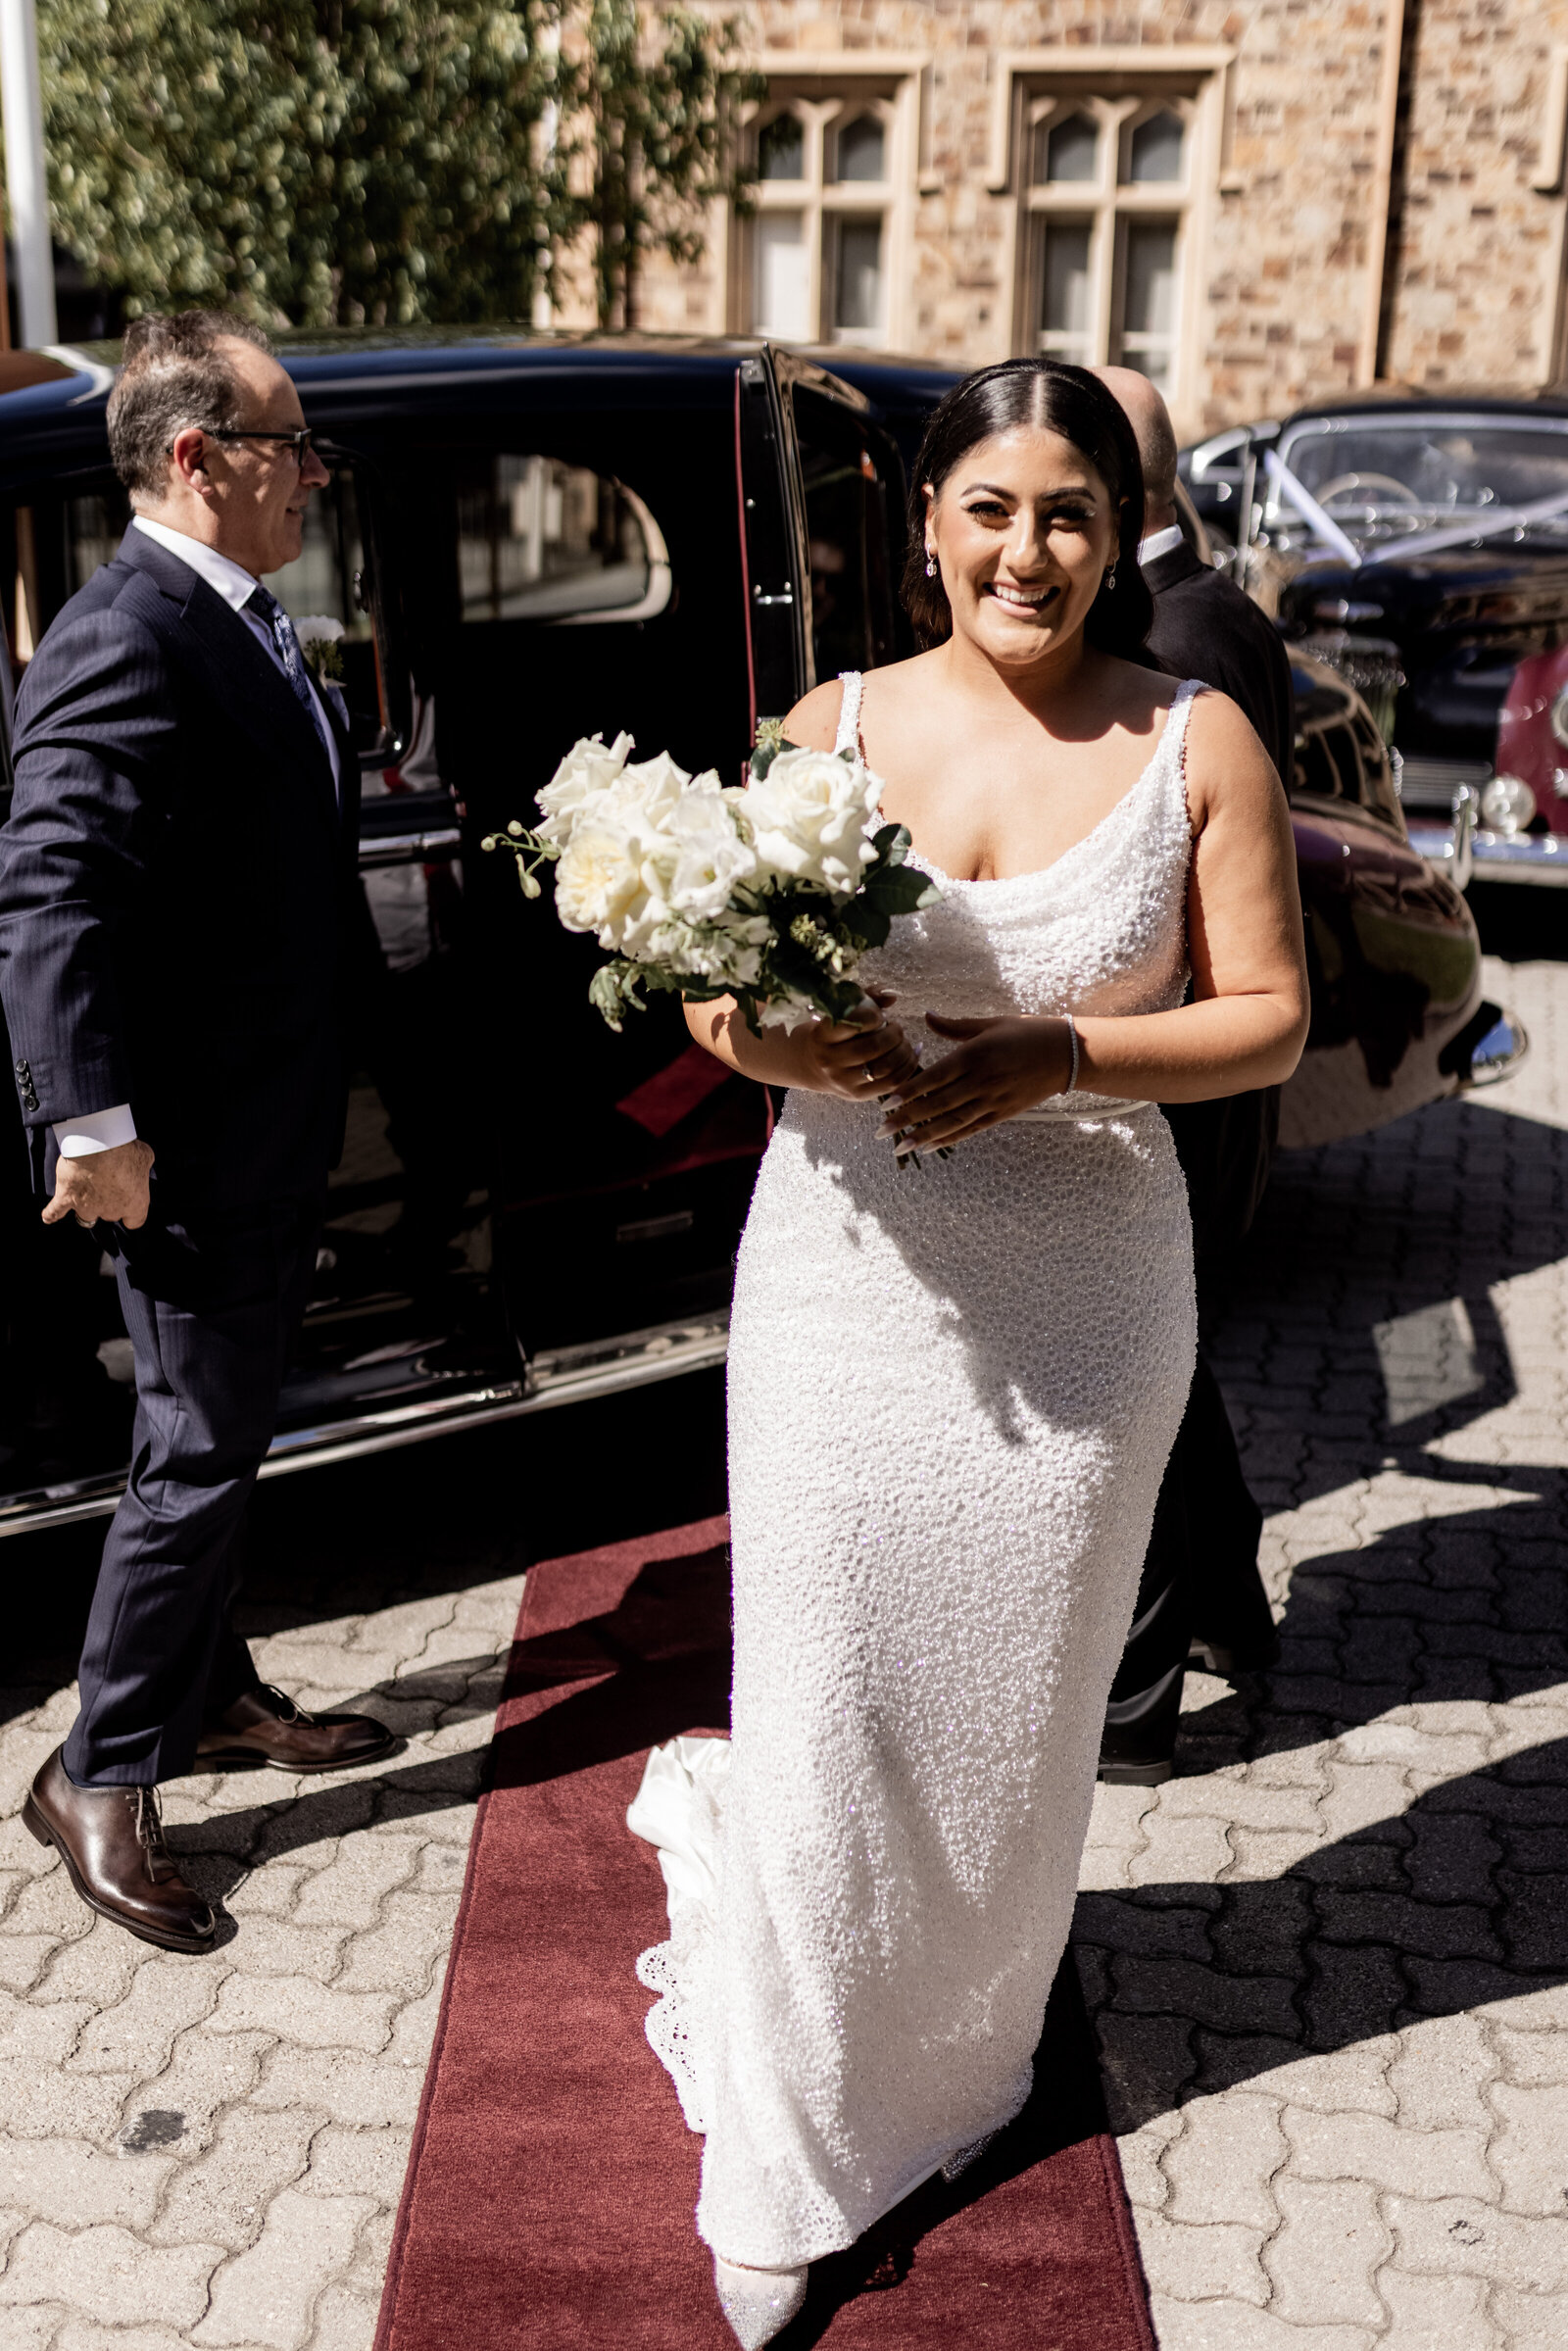 Isabella-Yianni-Wedding-Photographer-Rexvil-Photography-409